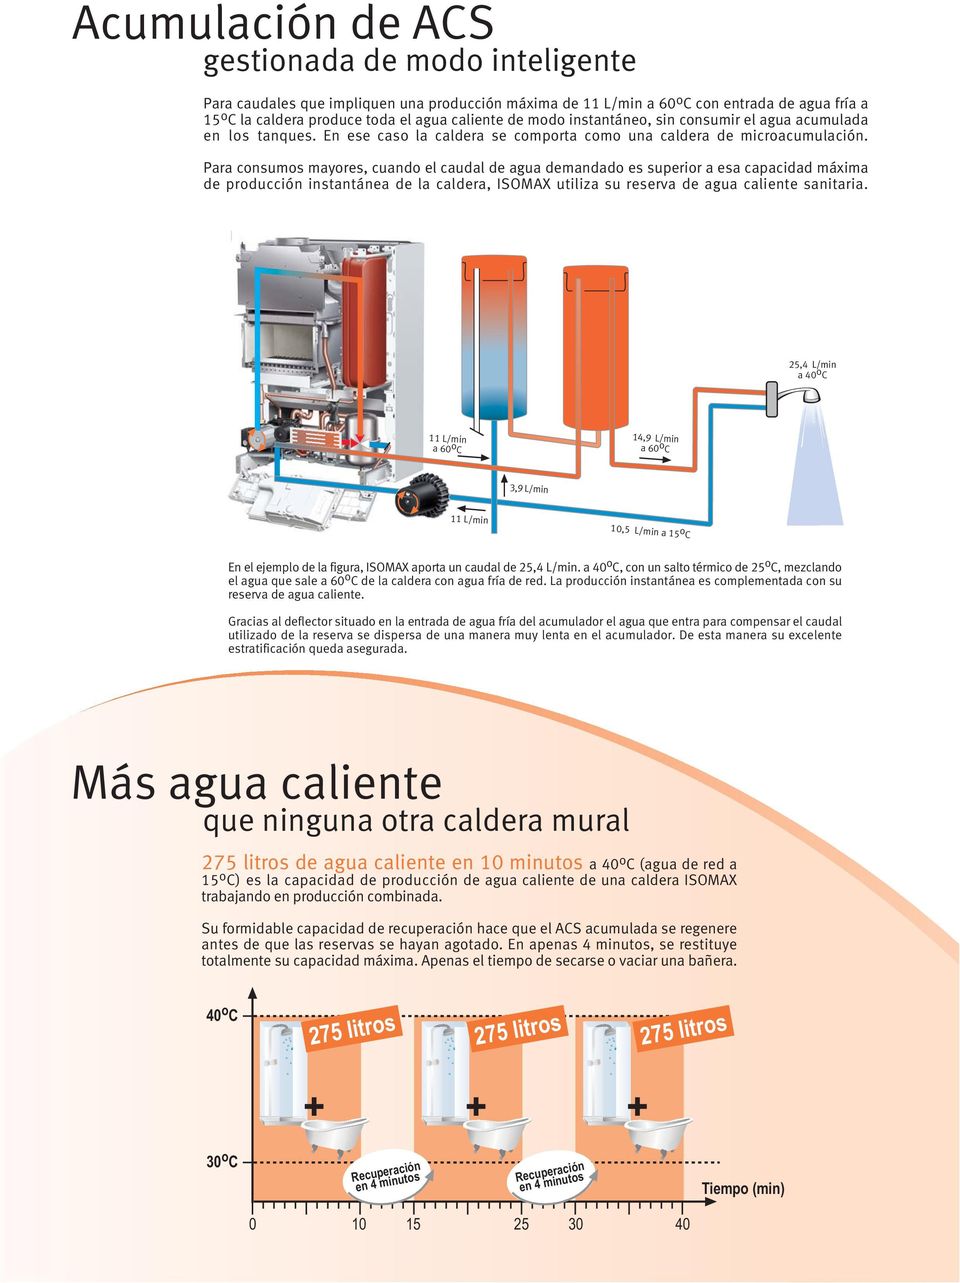 Para consumos mayores, cuando el caudal de agua demandado es superior a esa capacidad máxima de producción instantánea de la caldera, ISOMAX utiliza su reserva de agua caliente sanitaria.